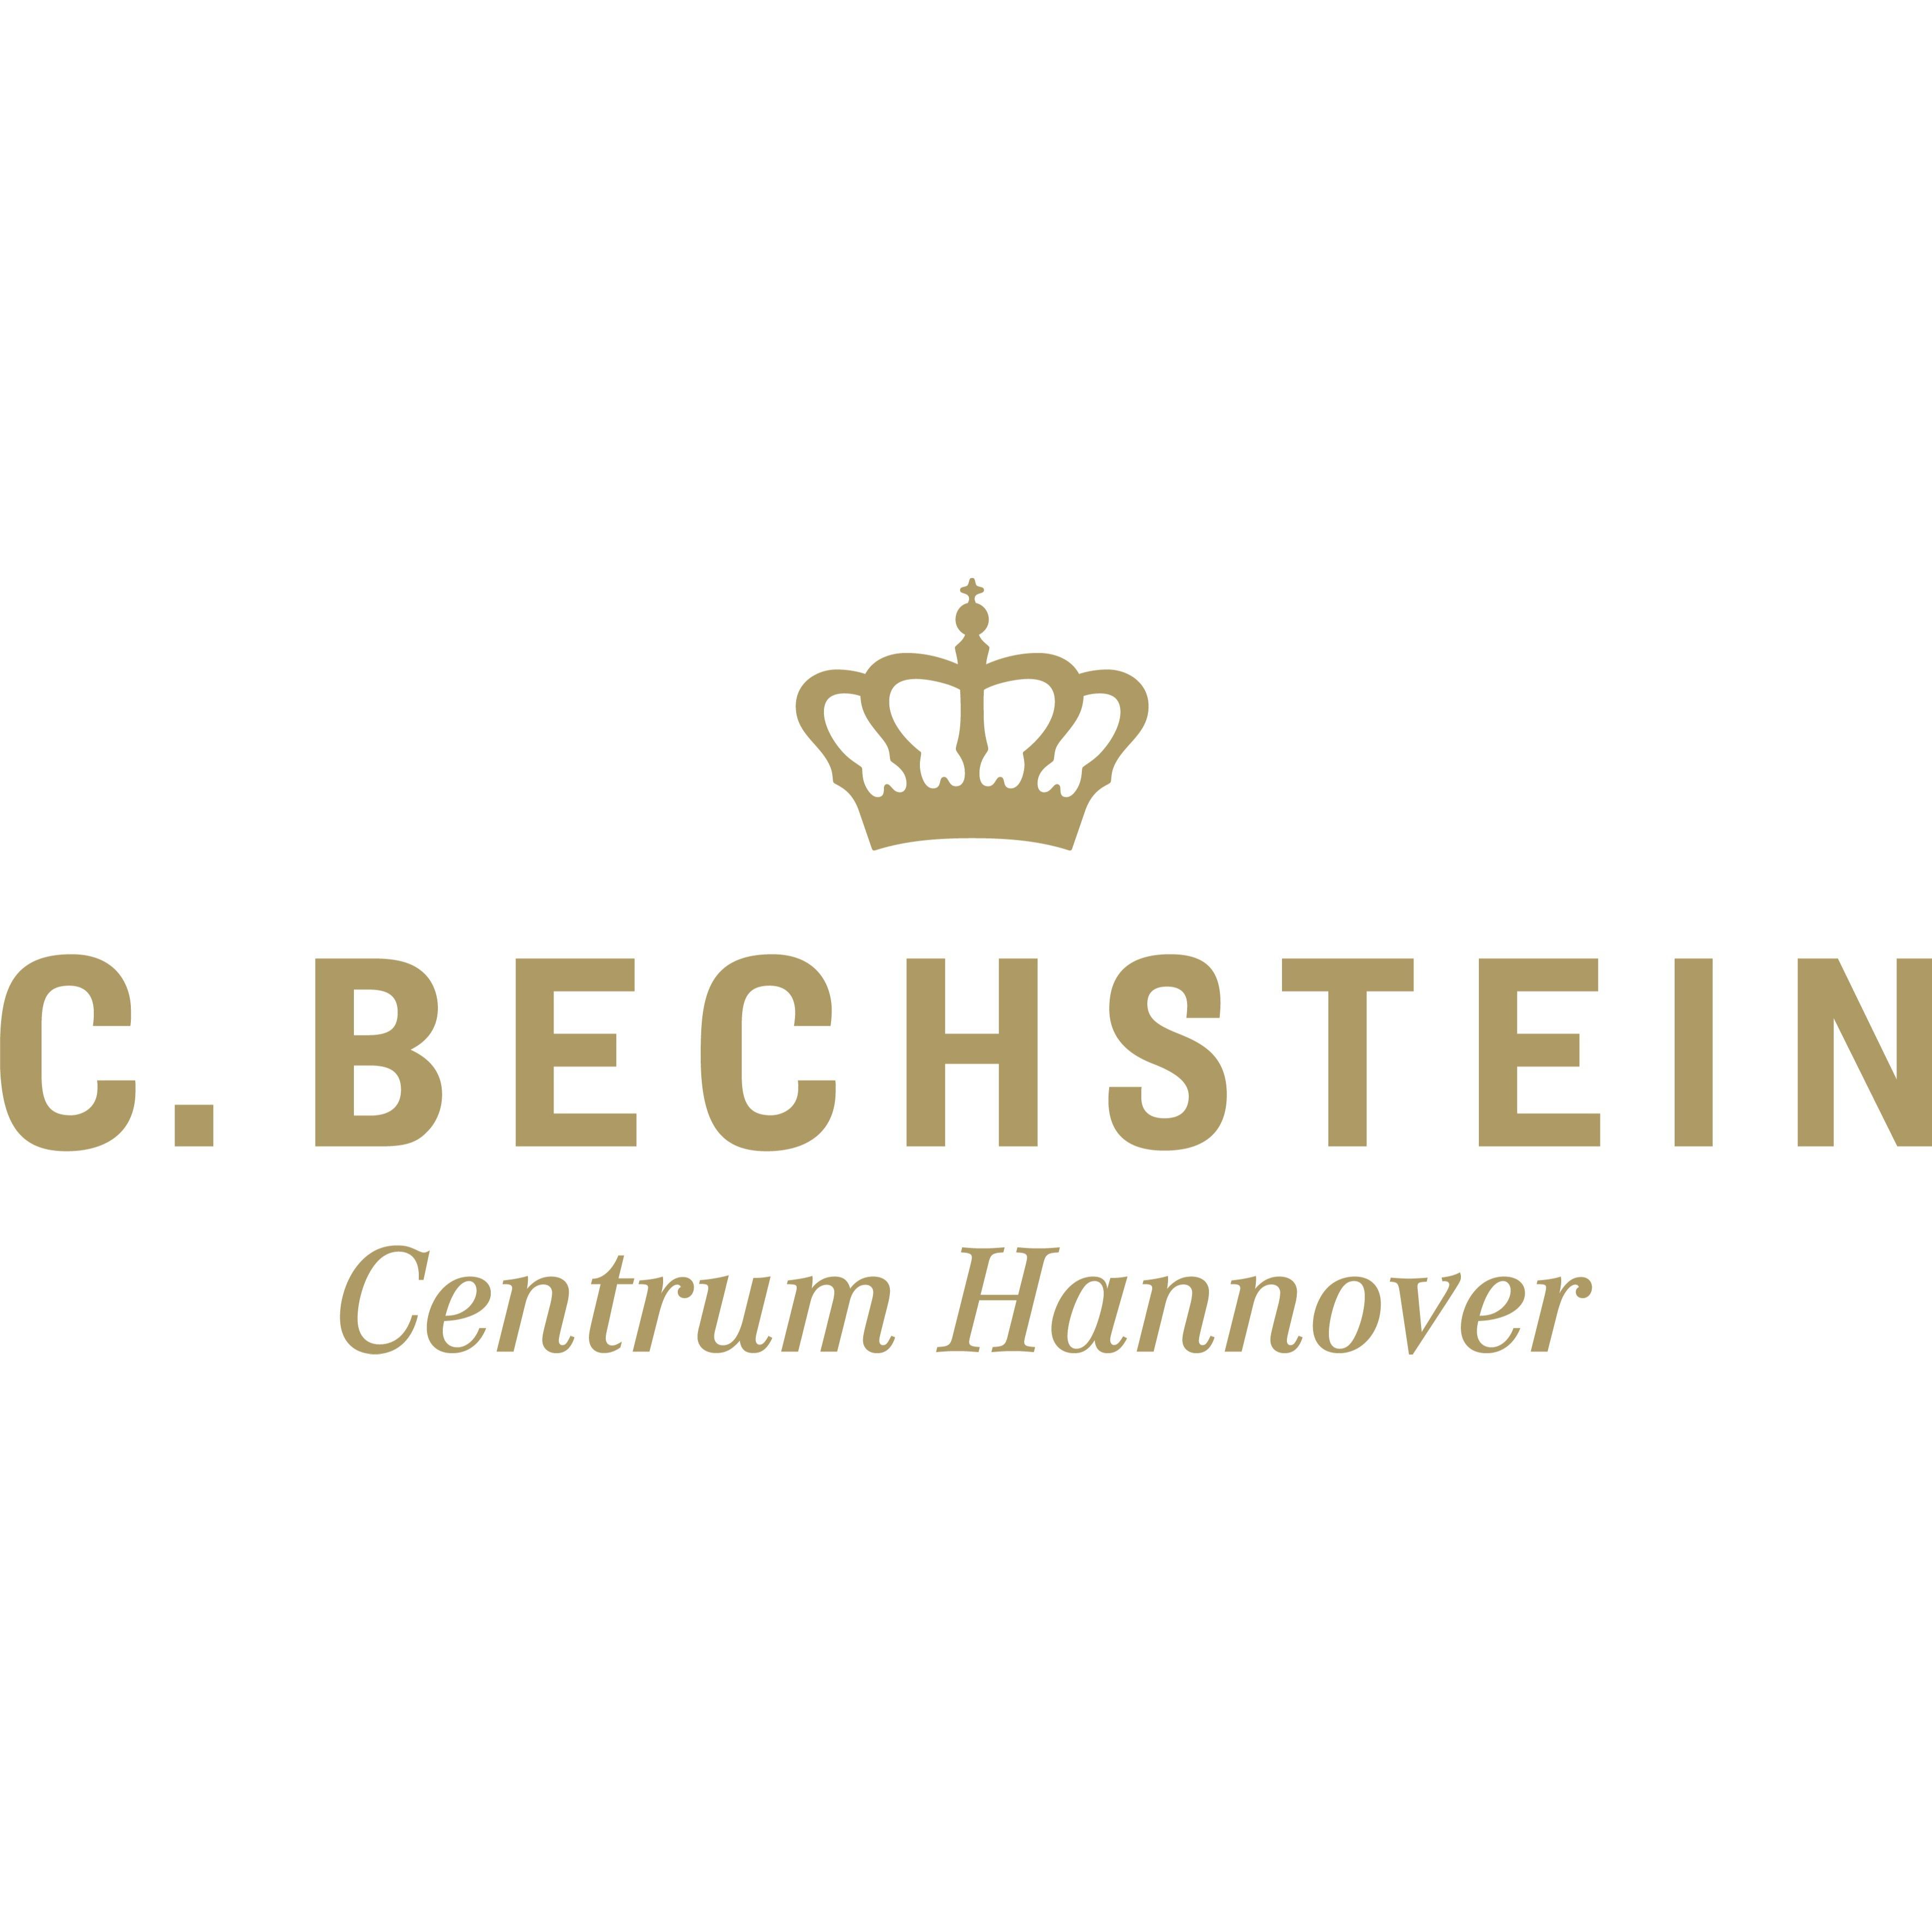 C. Bechstein Centrum Hannover GmbH in Hannover